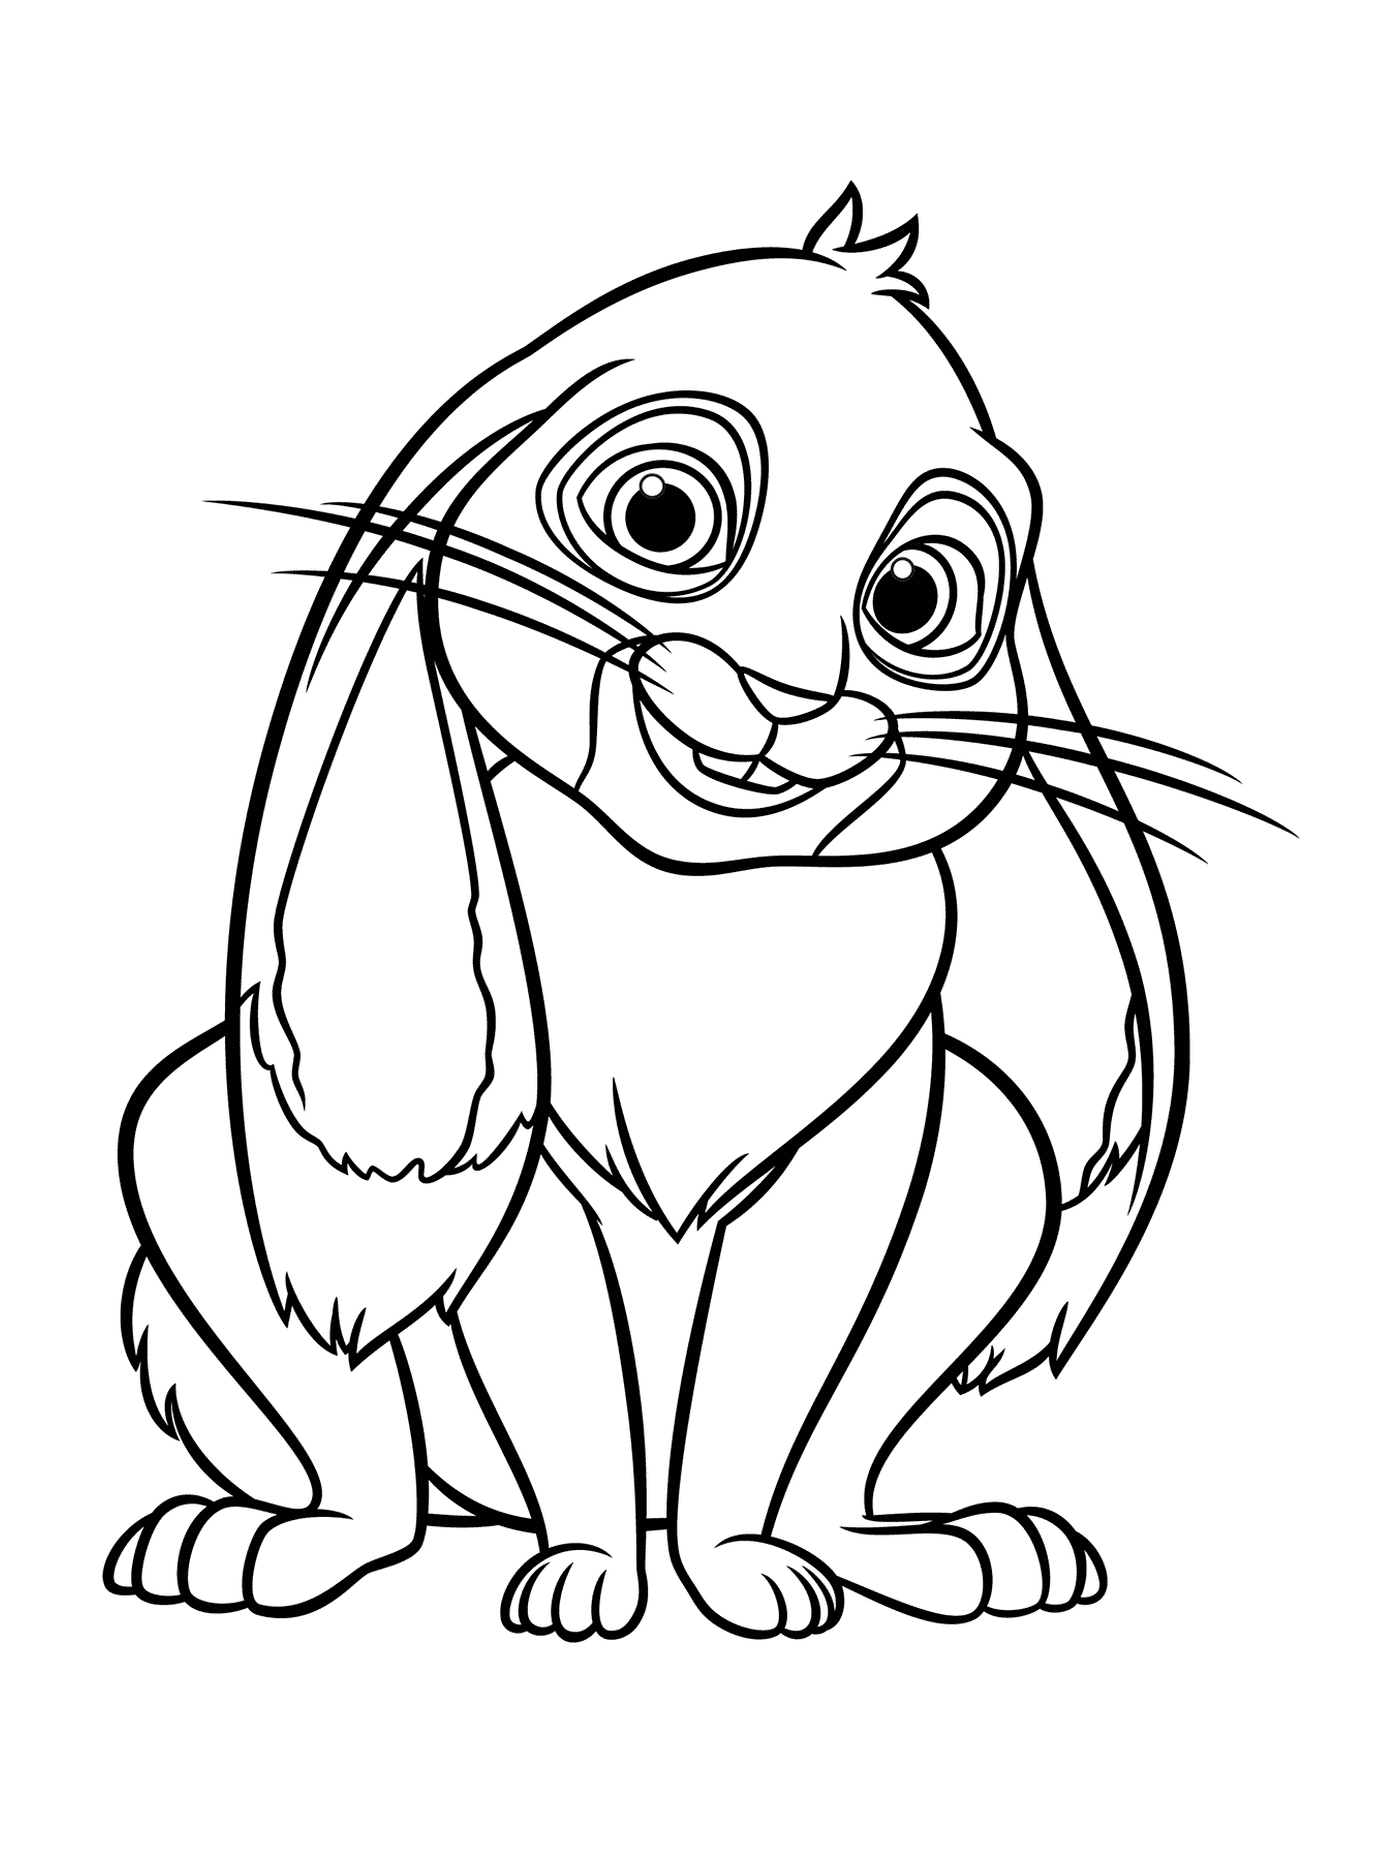  克洛佛,索菲亚公主的兔子 